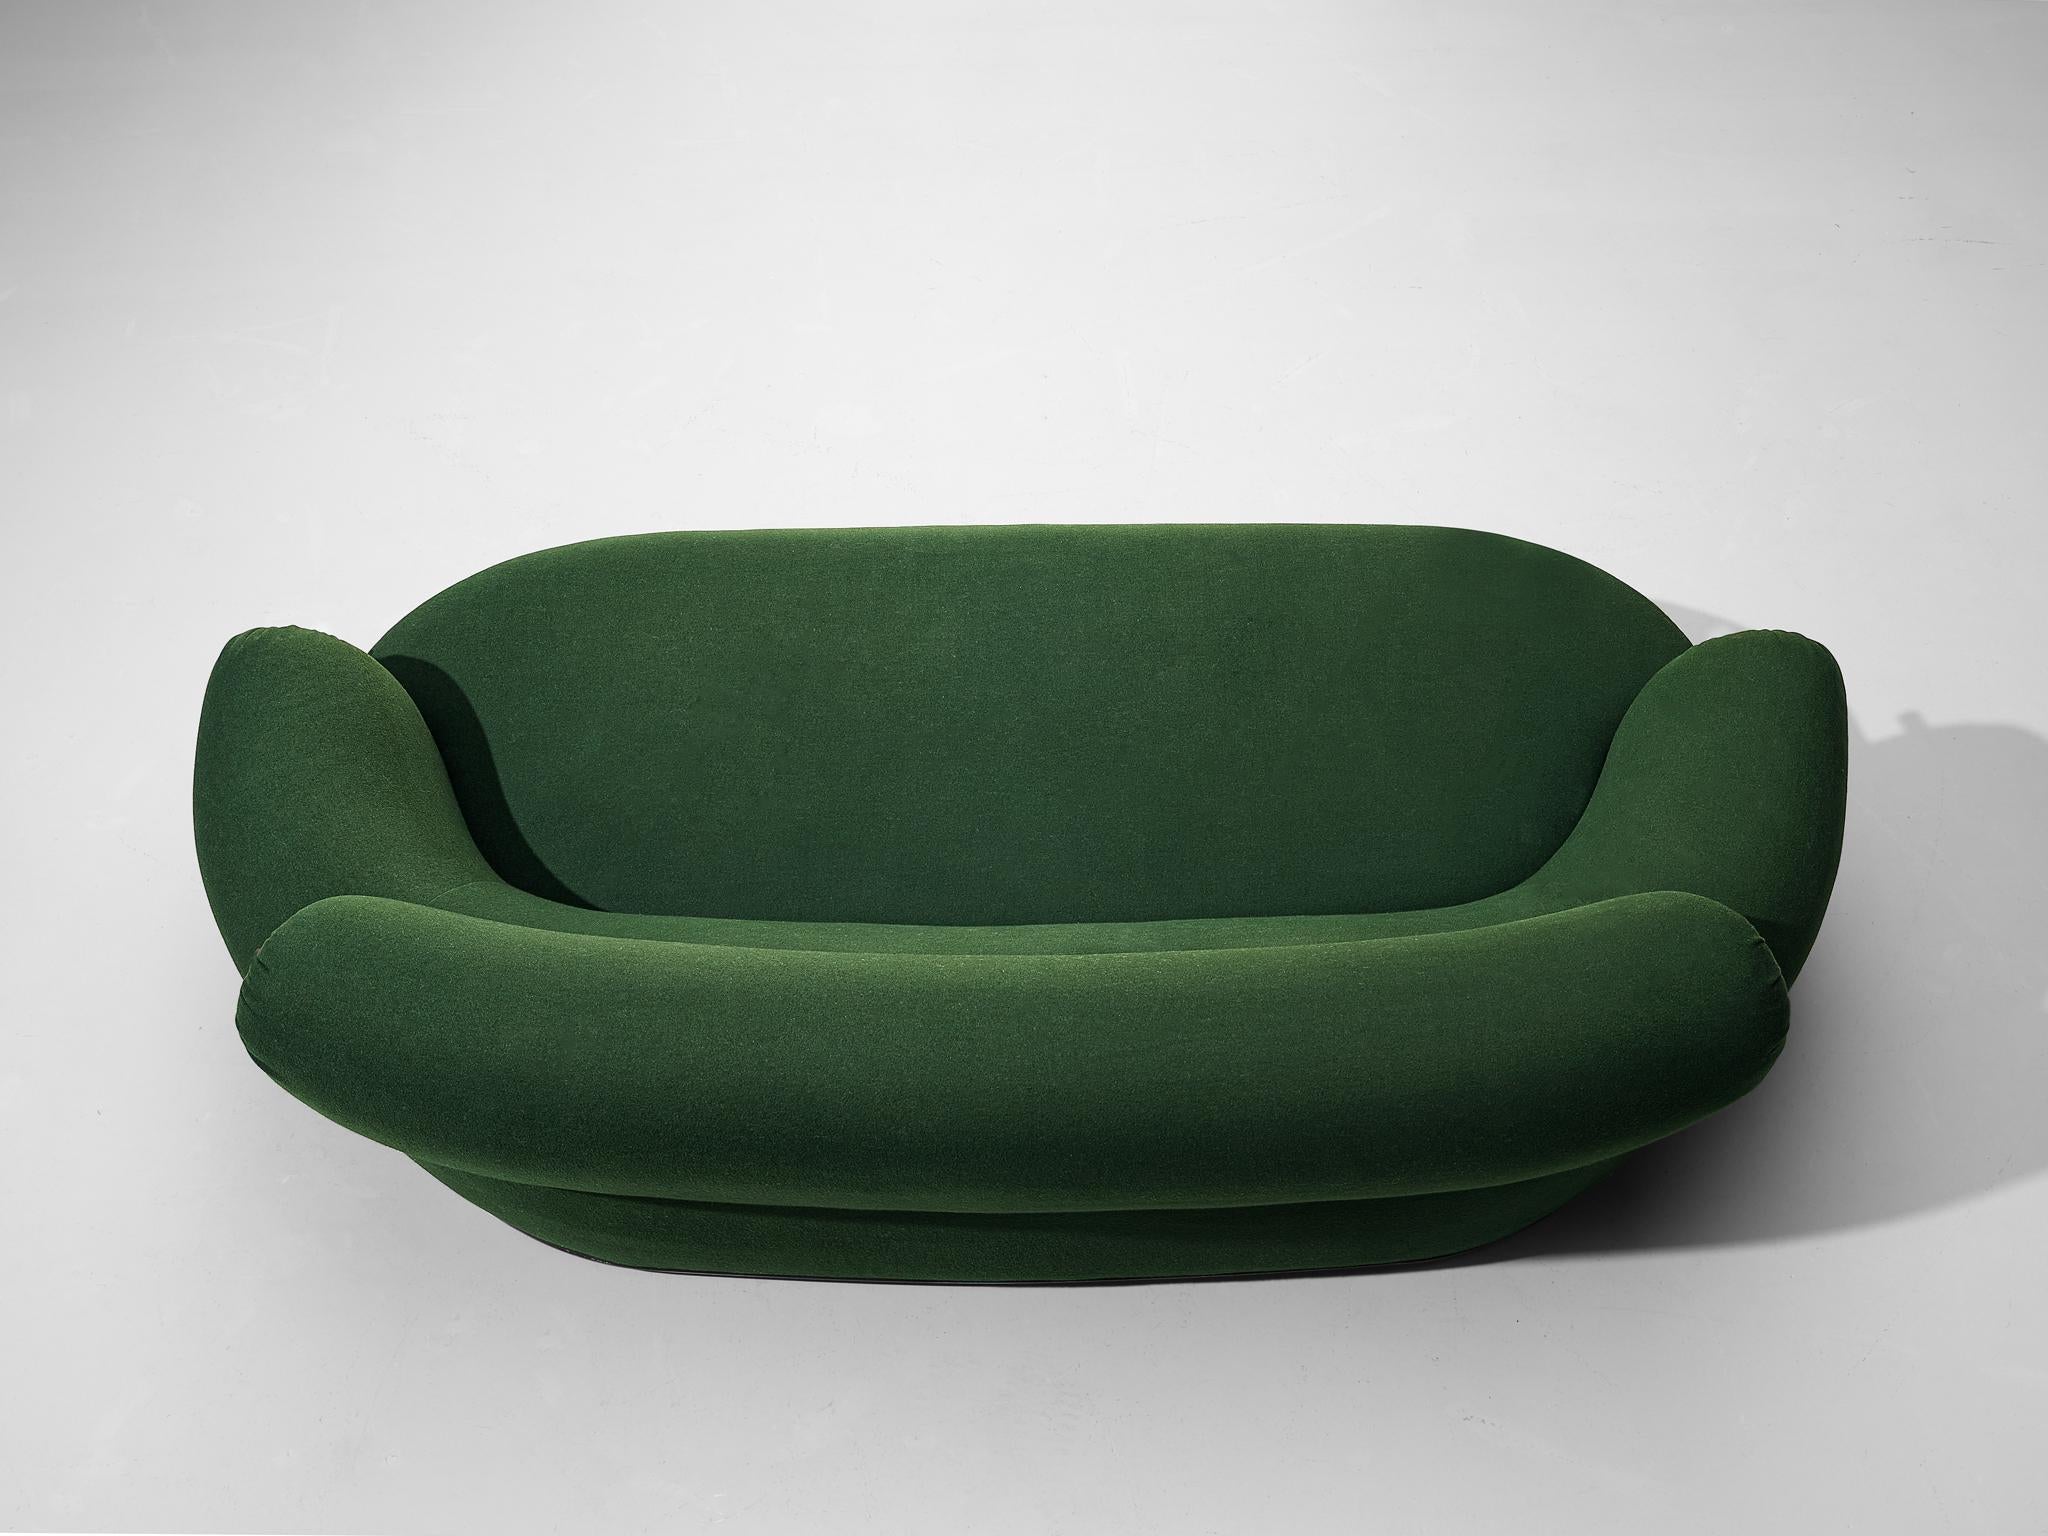 Italian Luigi Caccia Dominioni for Azucena ‘Toro’ Sofa in Dark Forest Green Upholstery For Sale